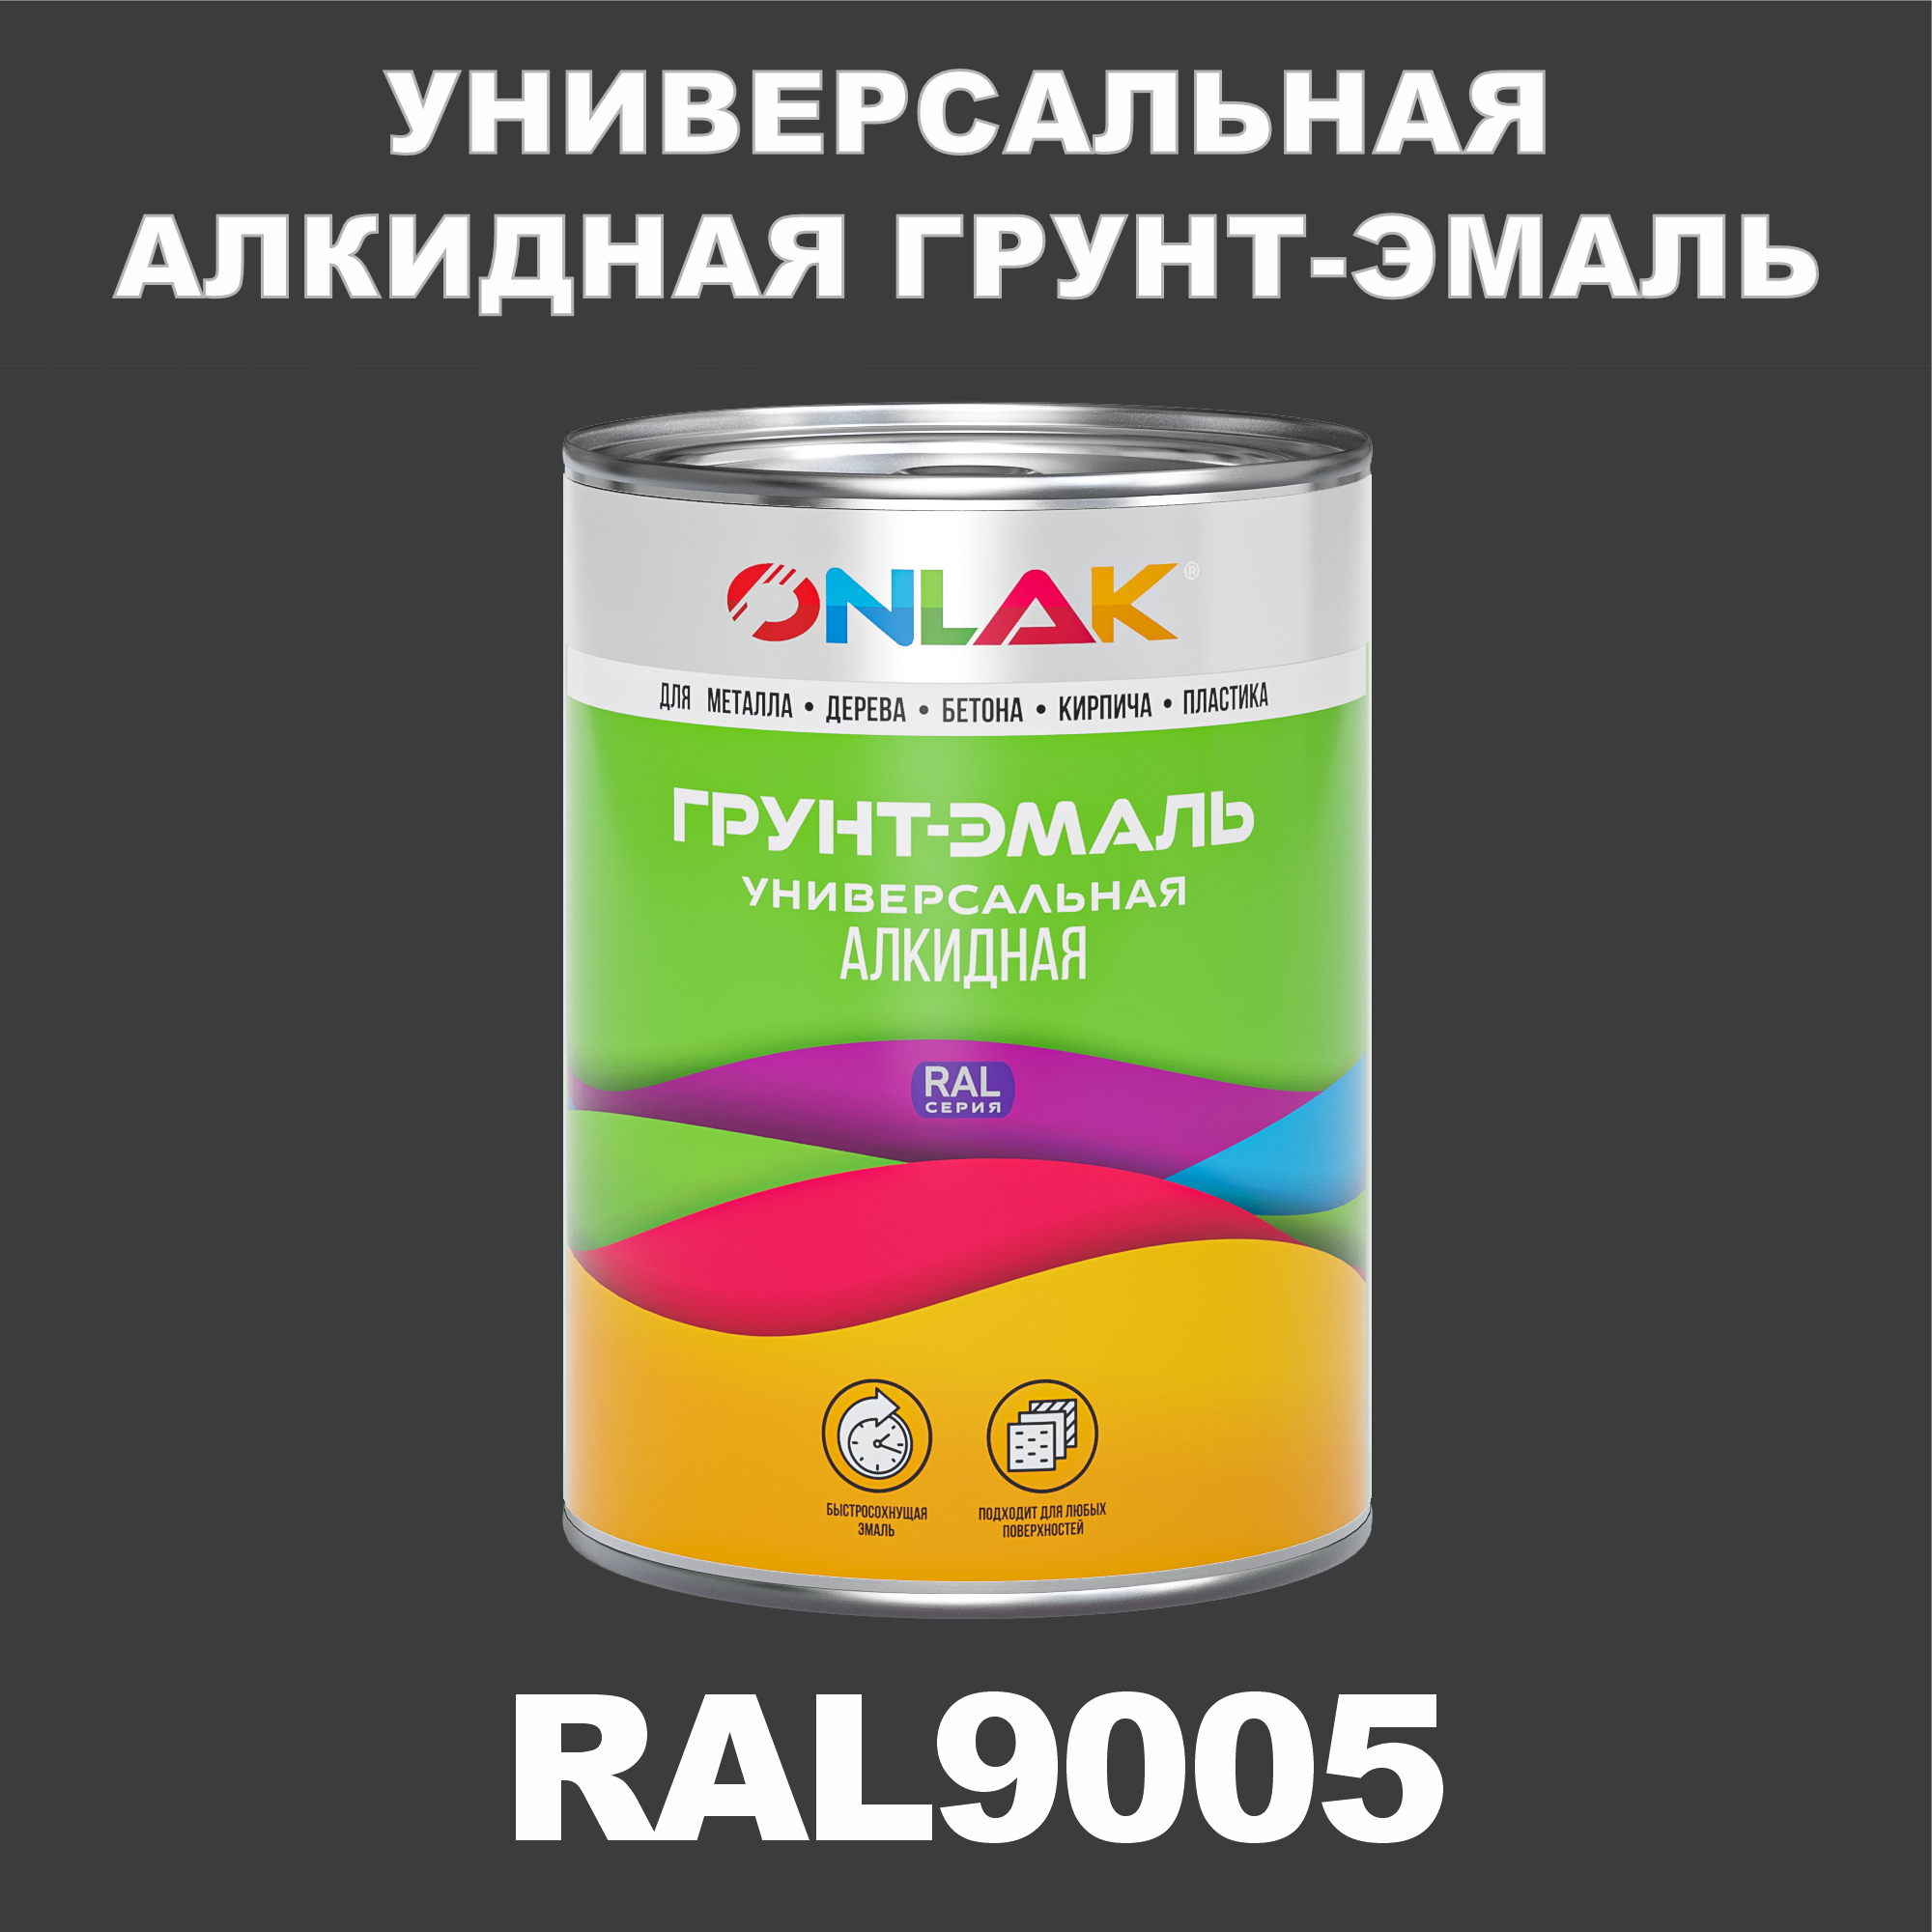 Грунт-эмаль ONLAK 1К RAL9005 антикоррозионная алкидная по металлу по ржавчине 1 кг грунт эмаль yollo по ржавчине алкидная серая 0 9 кг